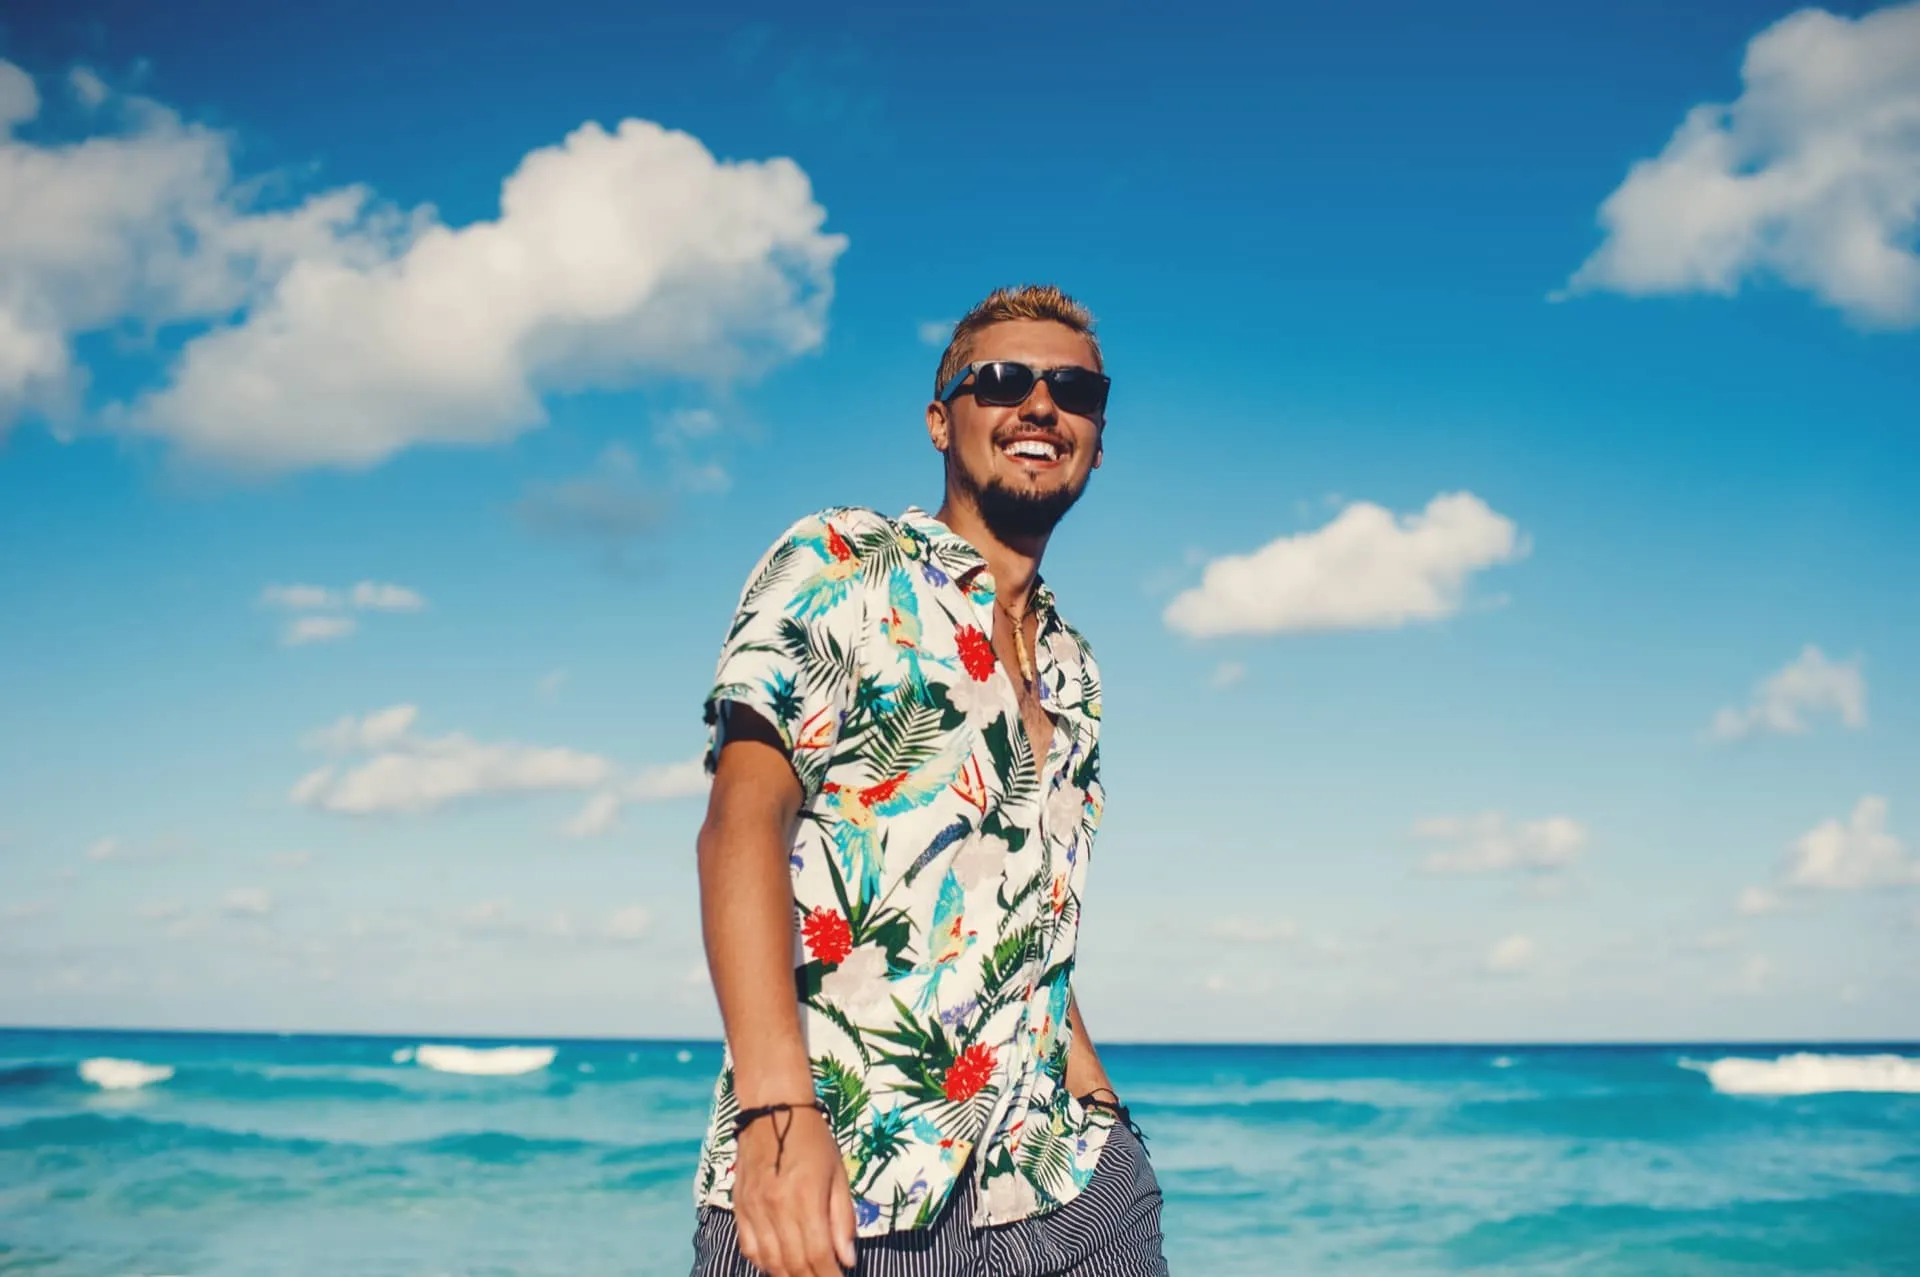 ハワイの海で男性がアロハシャツを着て楽しんでいる様子